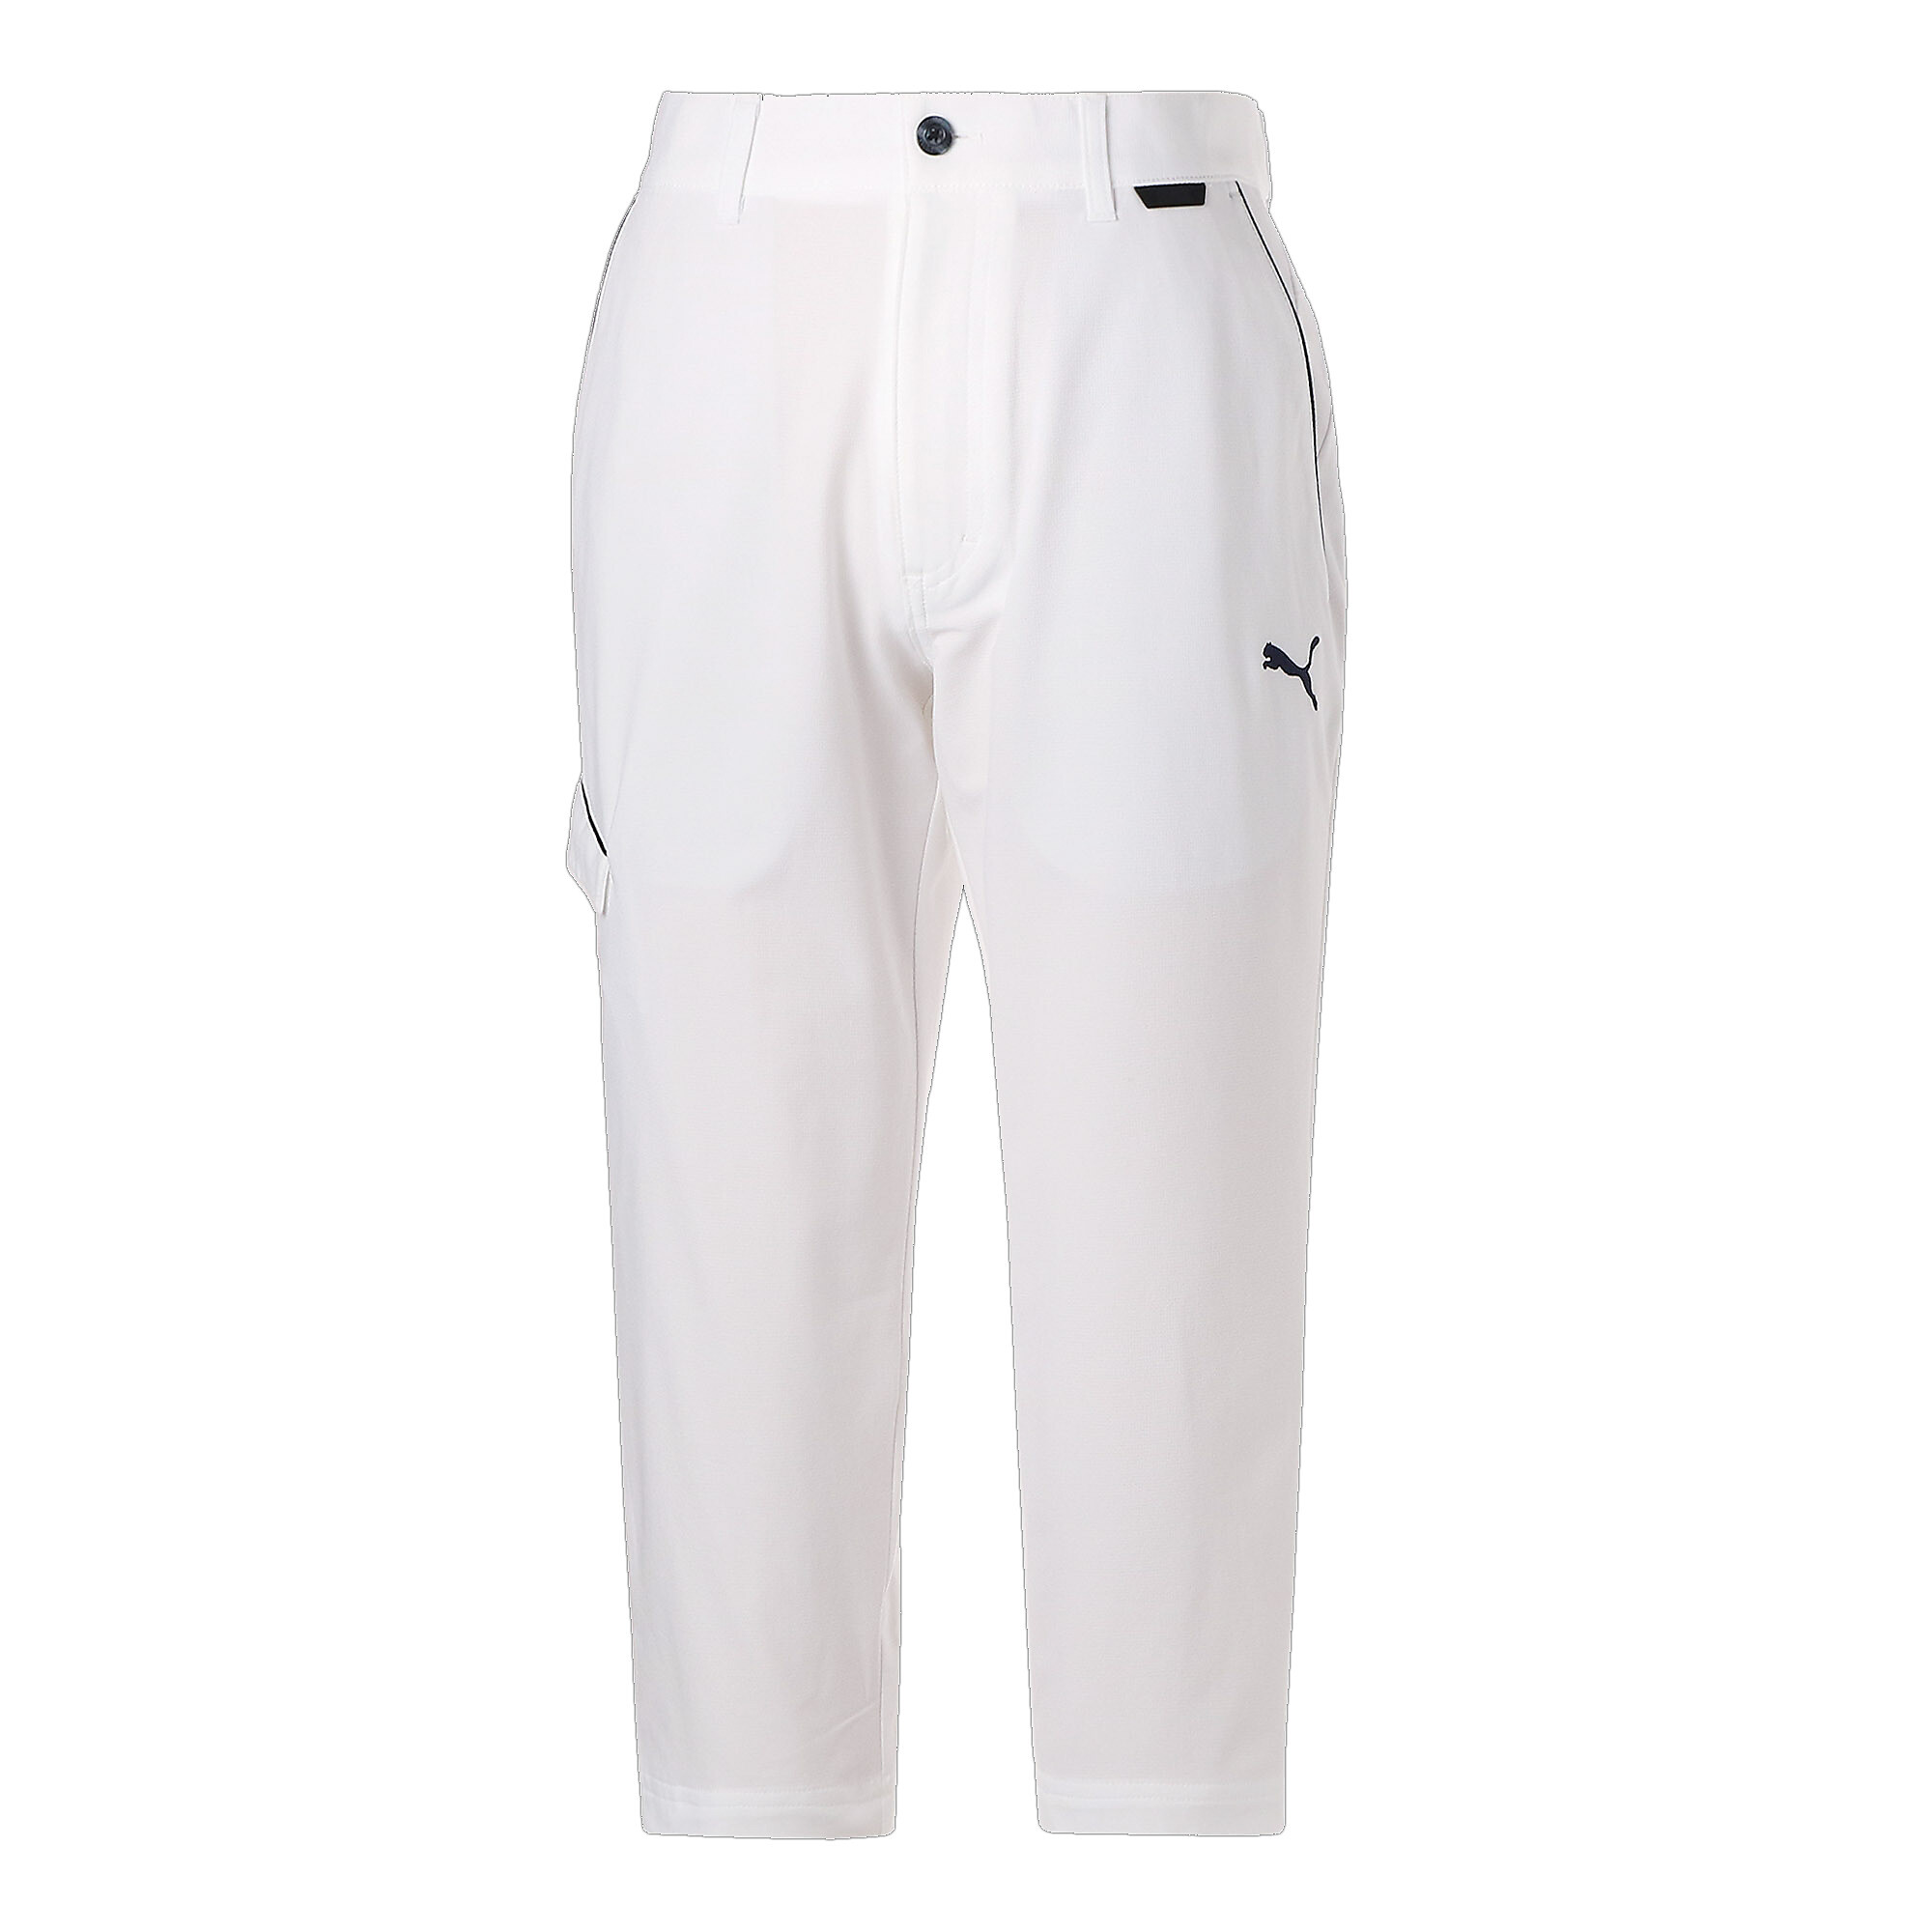 ＜プーマ公式通販＞ プーマ メンズ ゴルフ PUMA × DUVIN ポロシャツ メンズ Frosty White ｜PUMA.com